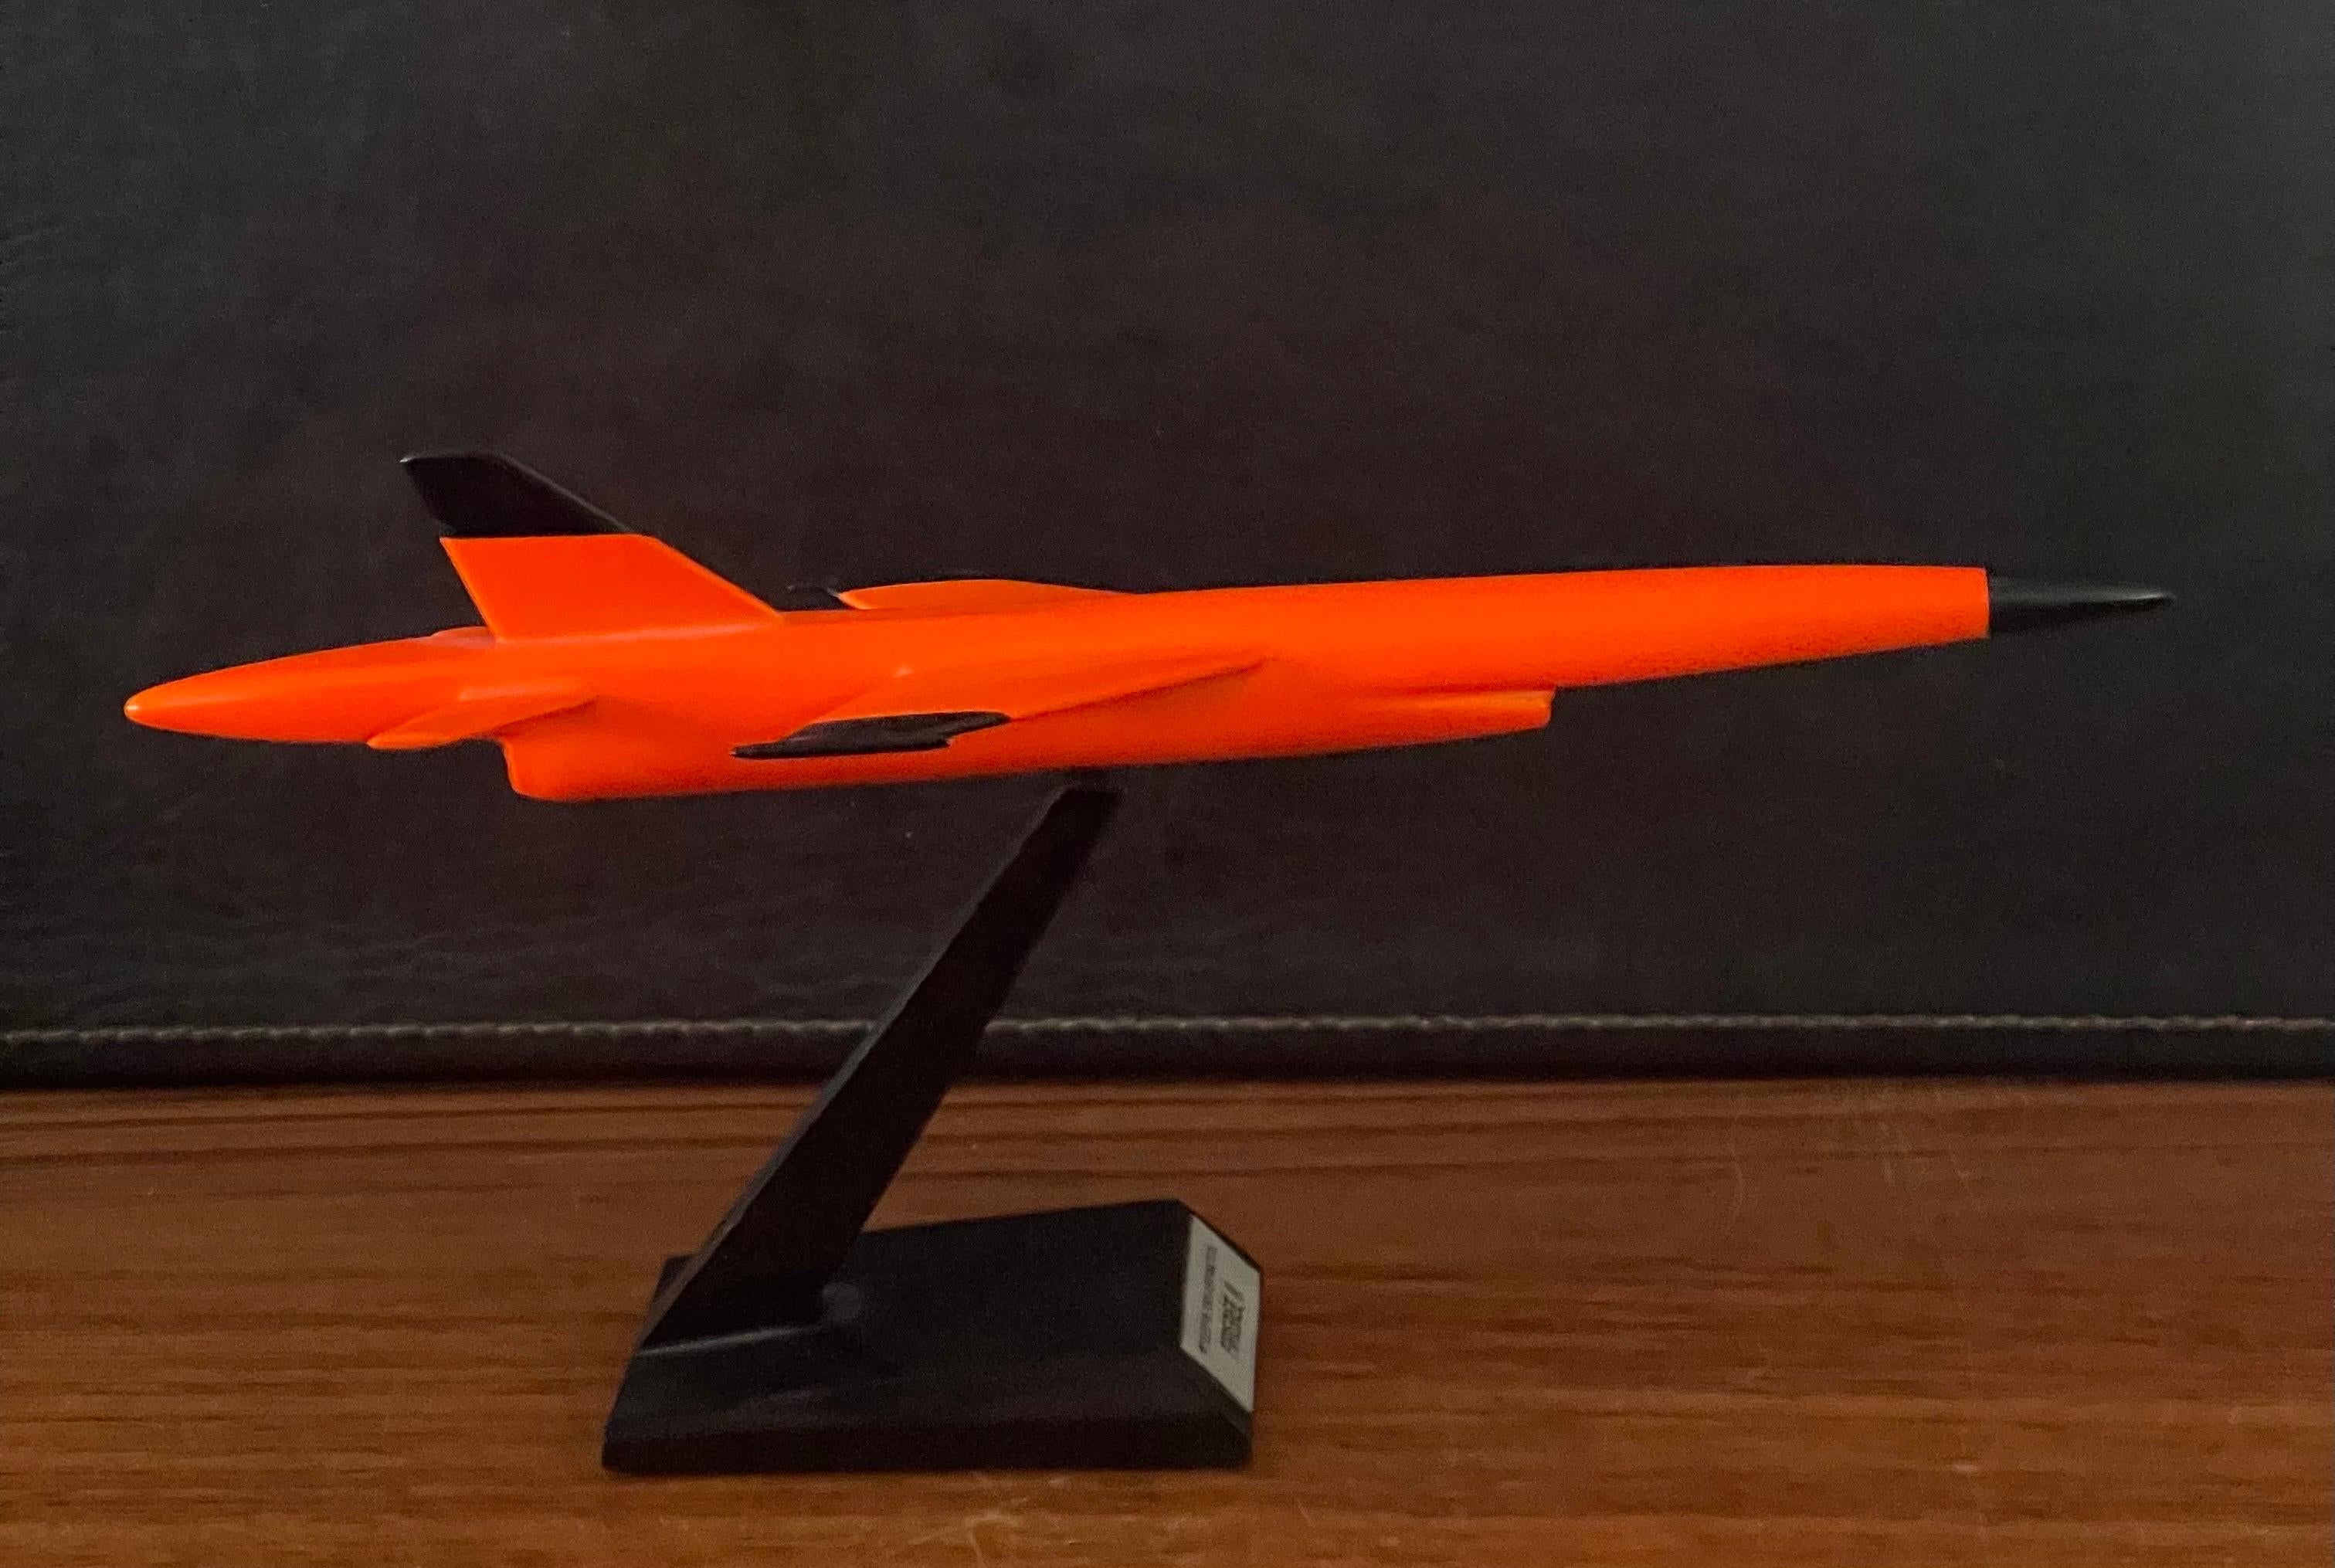 Teledyne Ryan Firebee II Drone Contractor's Desk Model For Sale 8